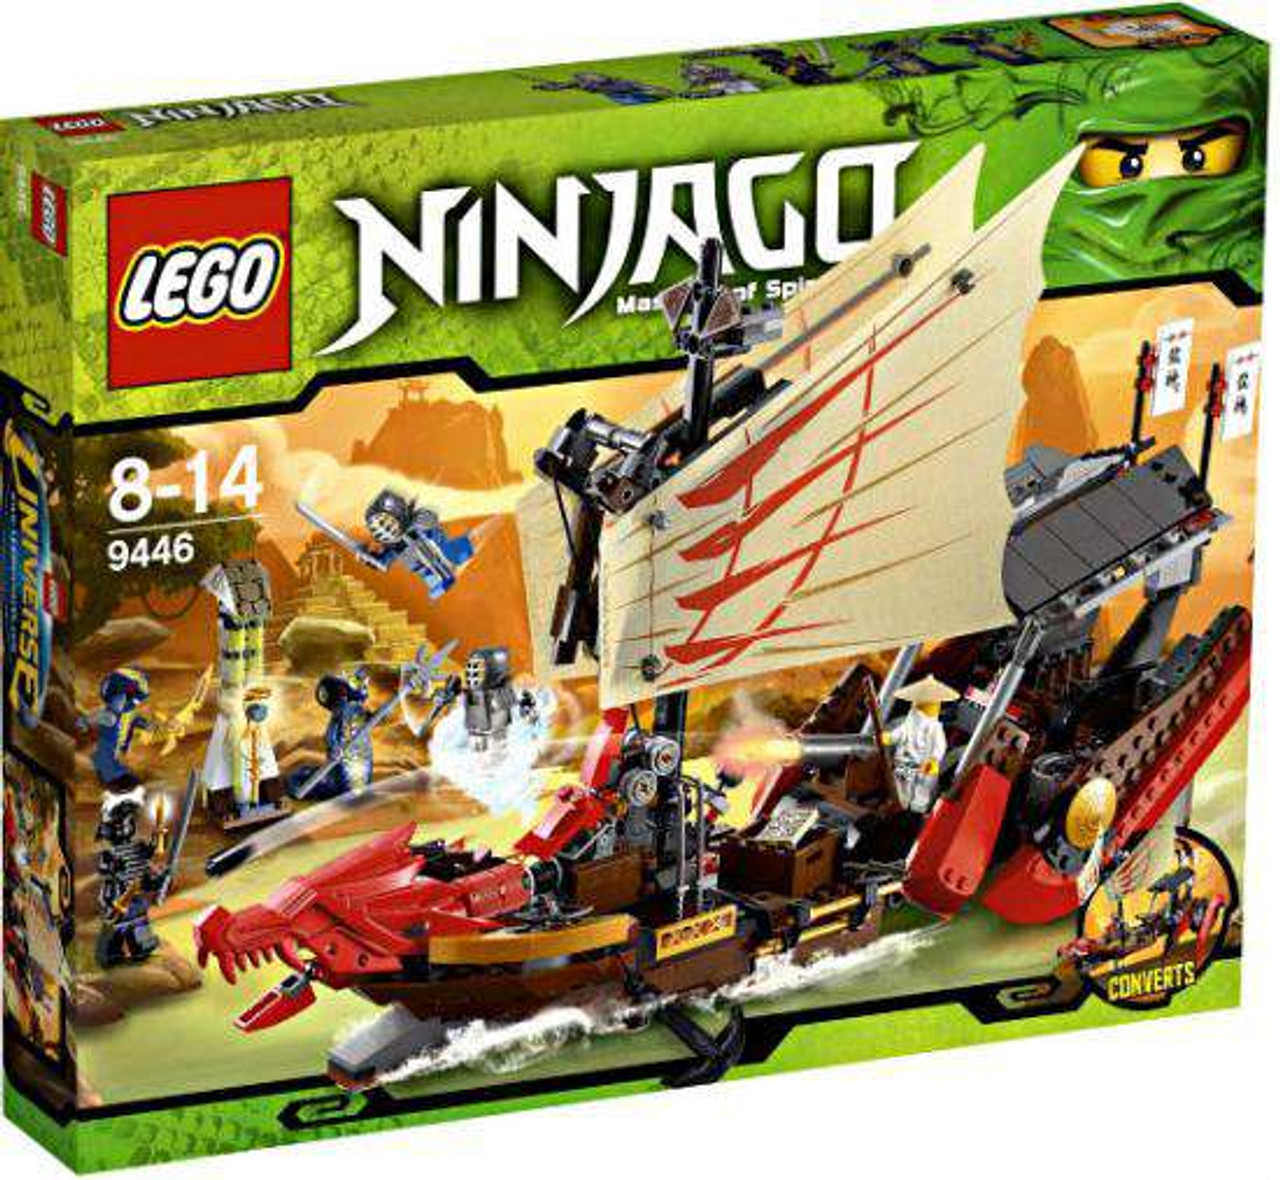 lego ninjago destiny's bounty set